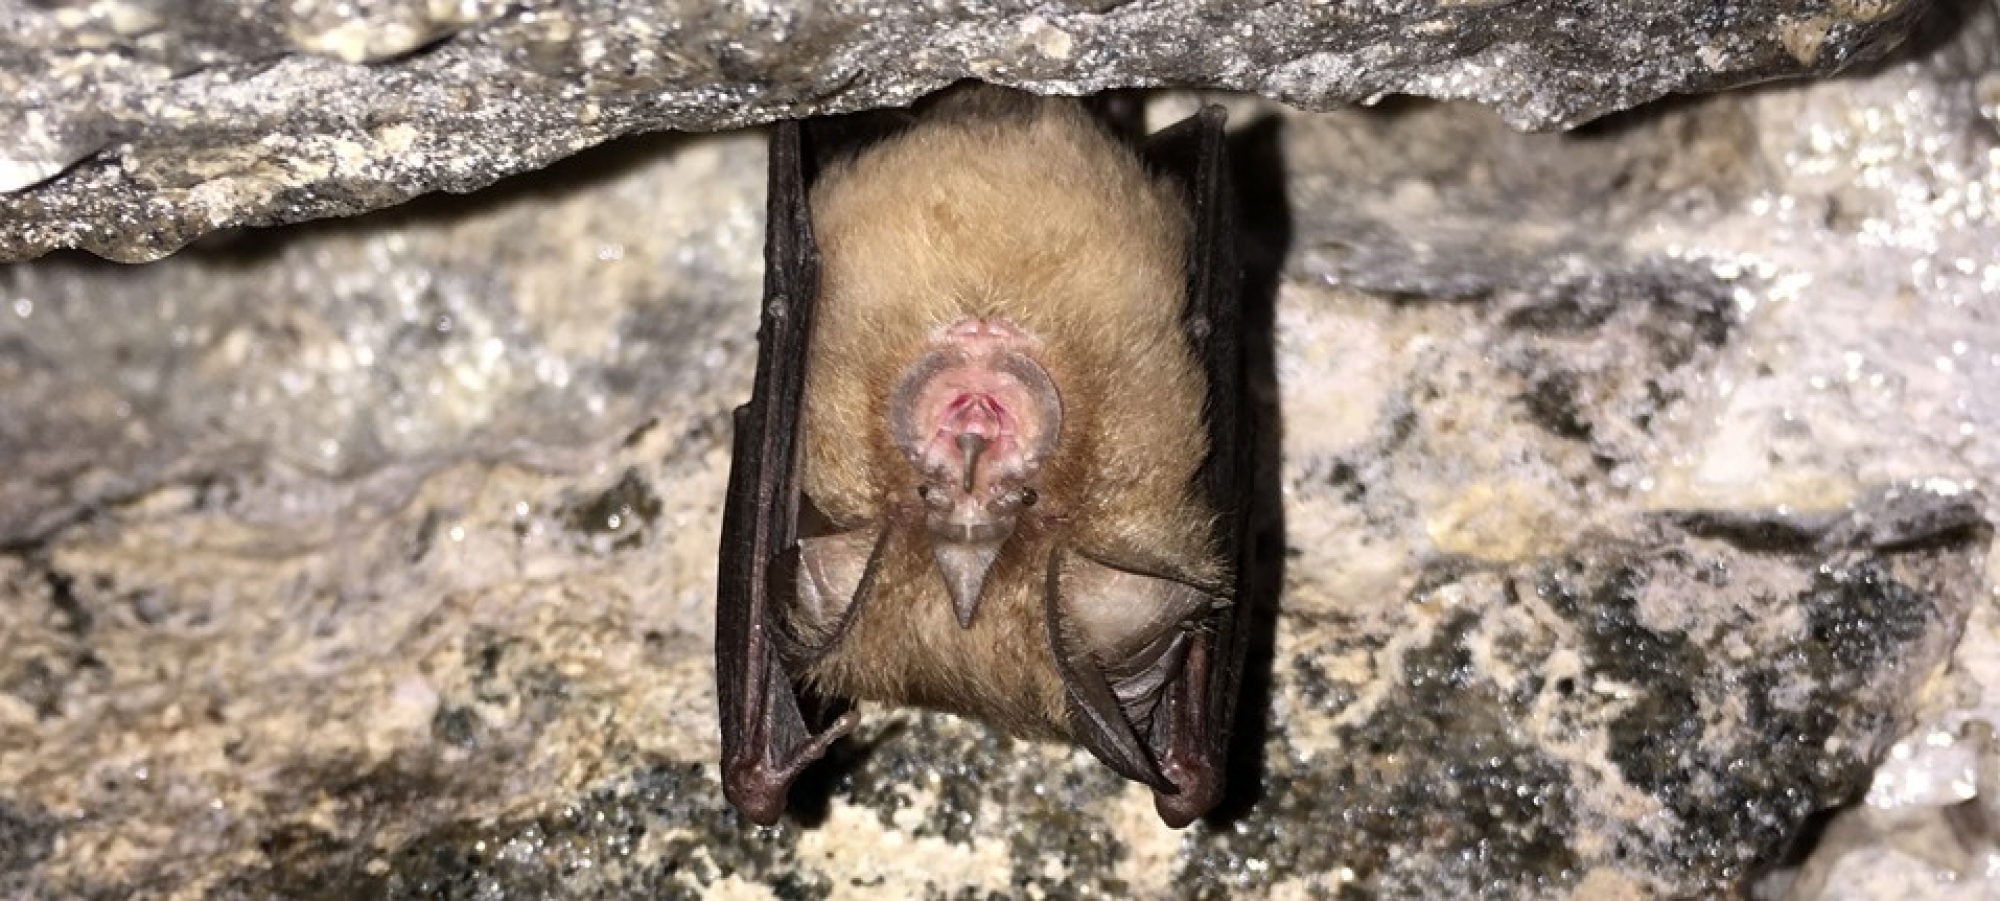 Bat Survey at a UNESCO world heritage site